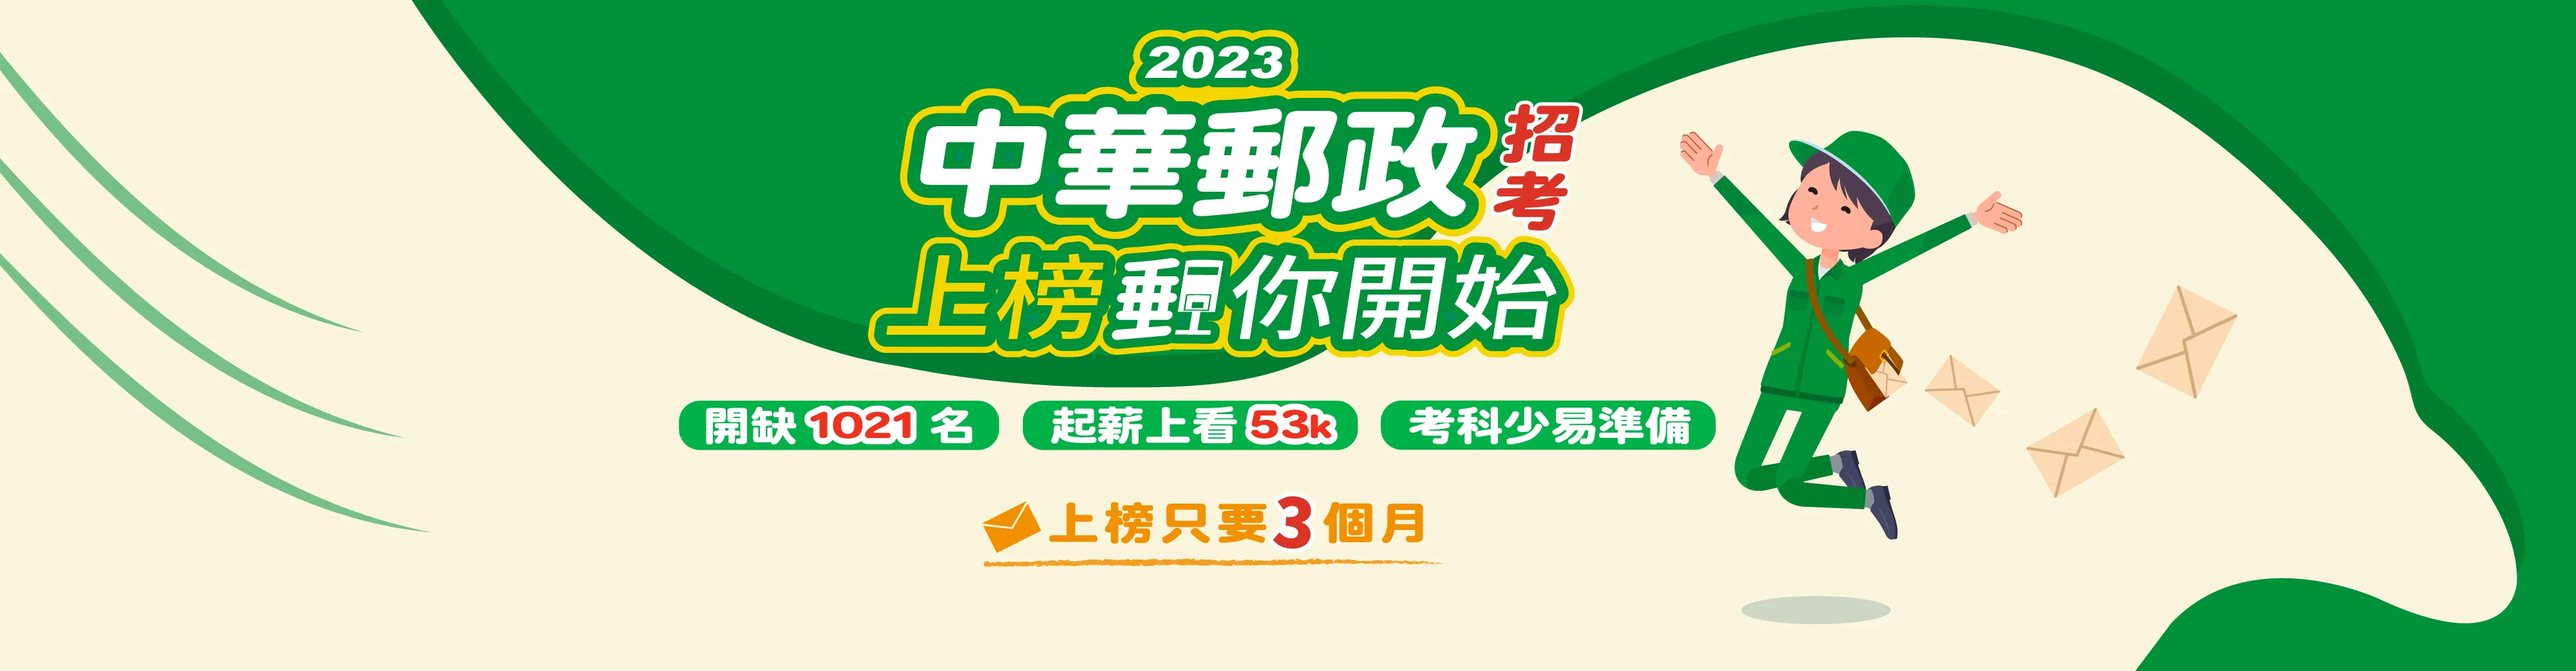 2023中華郵政招考